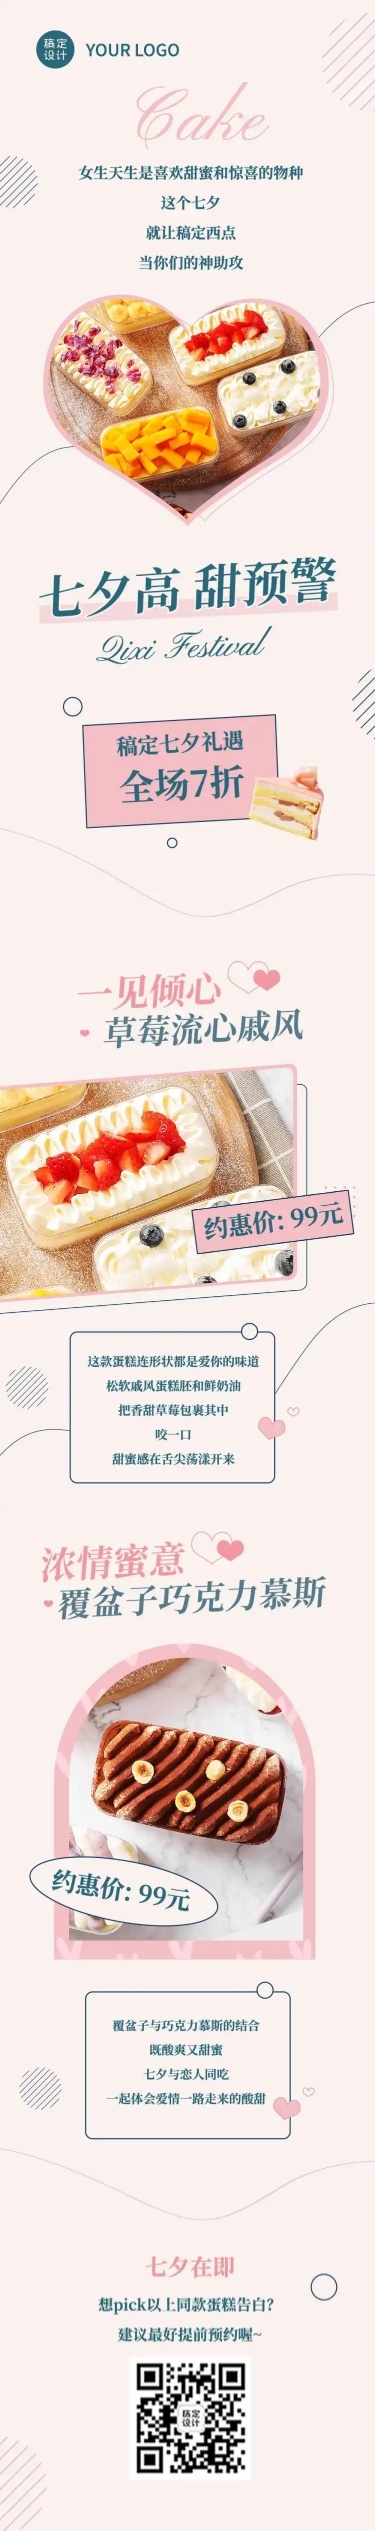 七夕烘焙甜品新品上市实景文章长图